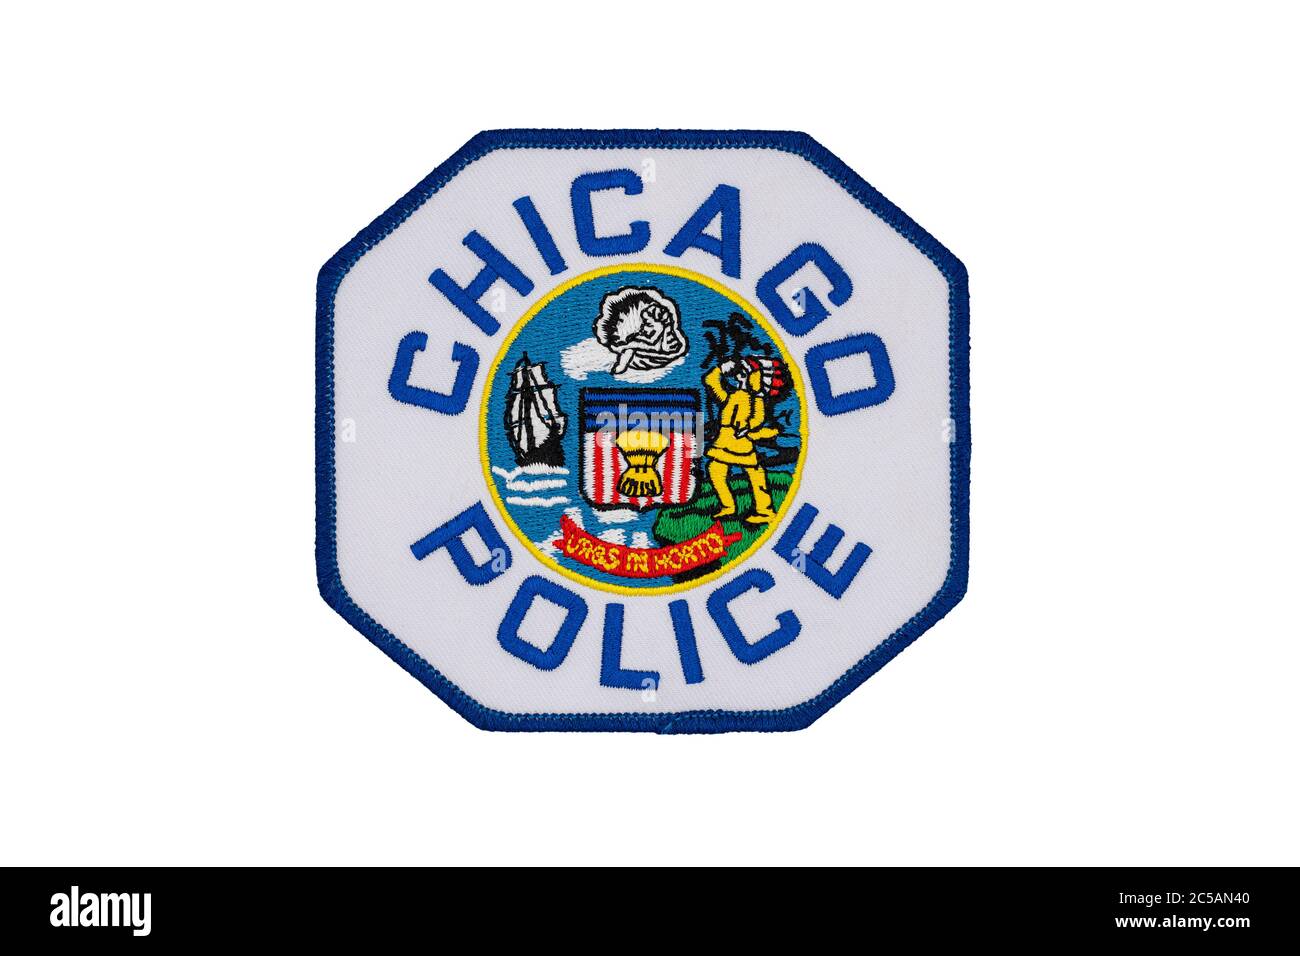 Offizieller Schulterfleck der Chicagoer Polizeibehörde isoliert auf weißem Hintergrund. Das lateinische Motto 'Urbs in horto' (Stadt im Garten), darauf aufgenäht. Stockfoto